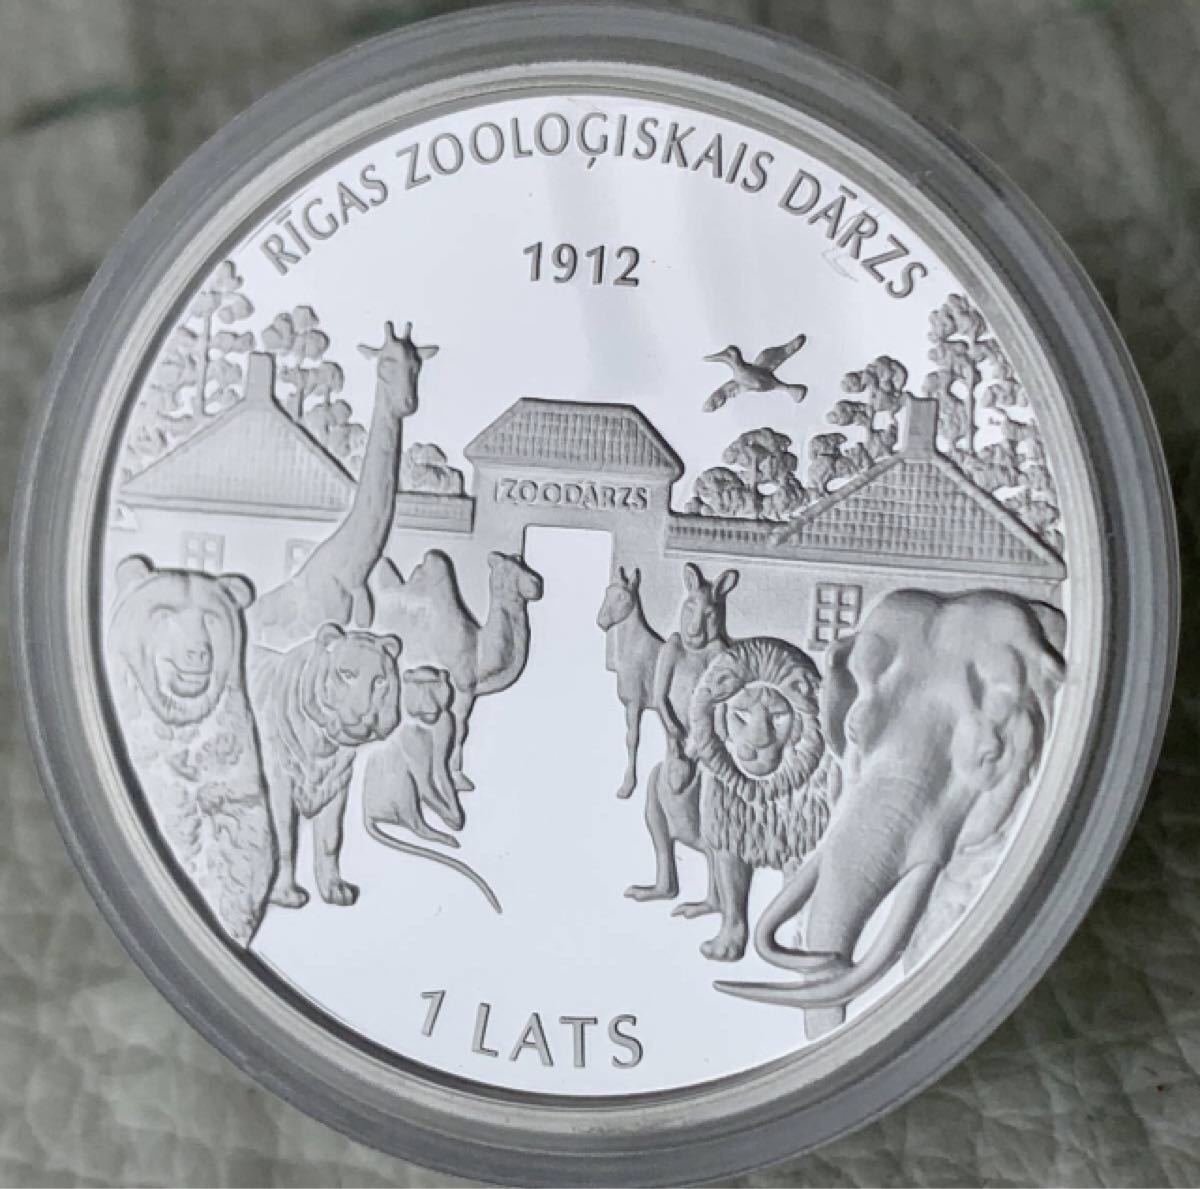 レア★かわいい★2012年 ラトビア共和国 『リガ動物園100周年記念』１Lats シルバーコイン BOX証明書付属 プルーフ銀貨